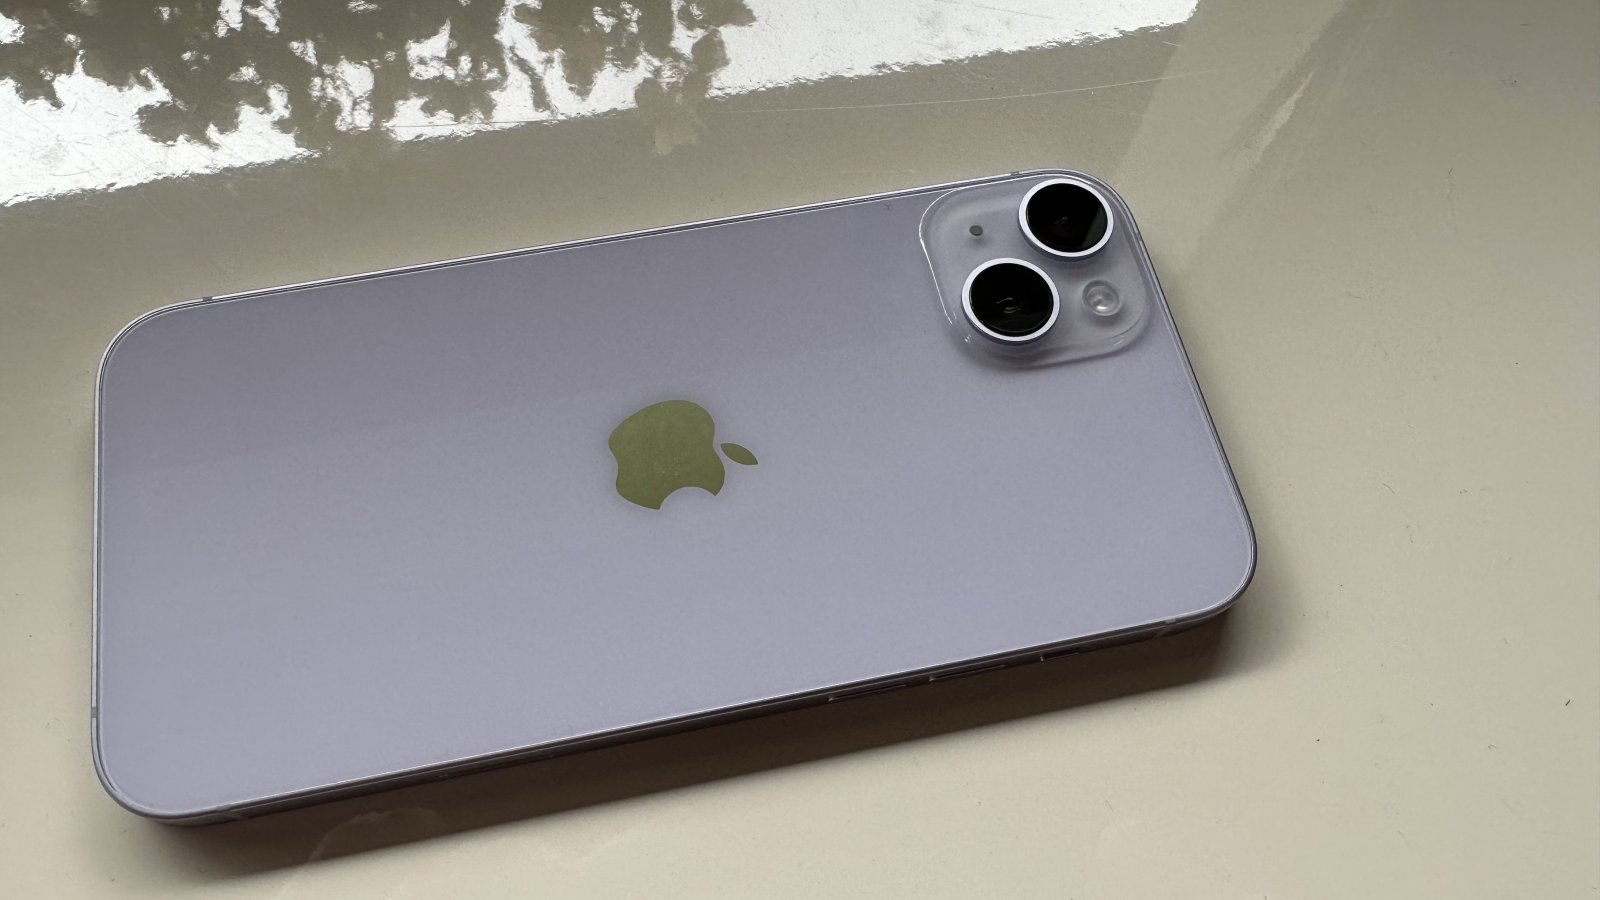 iPhone usa sensori Sony per le fotocamere, conferma Apple